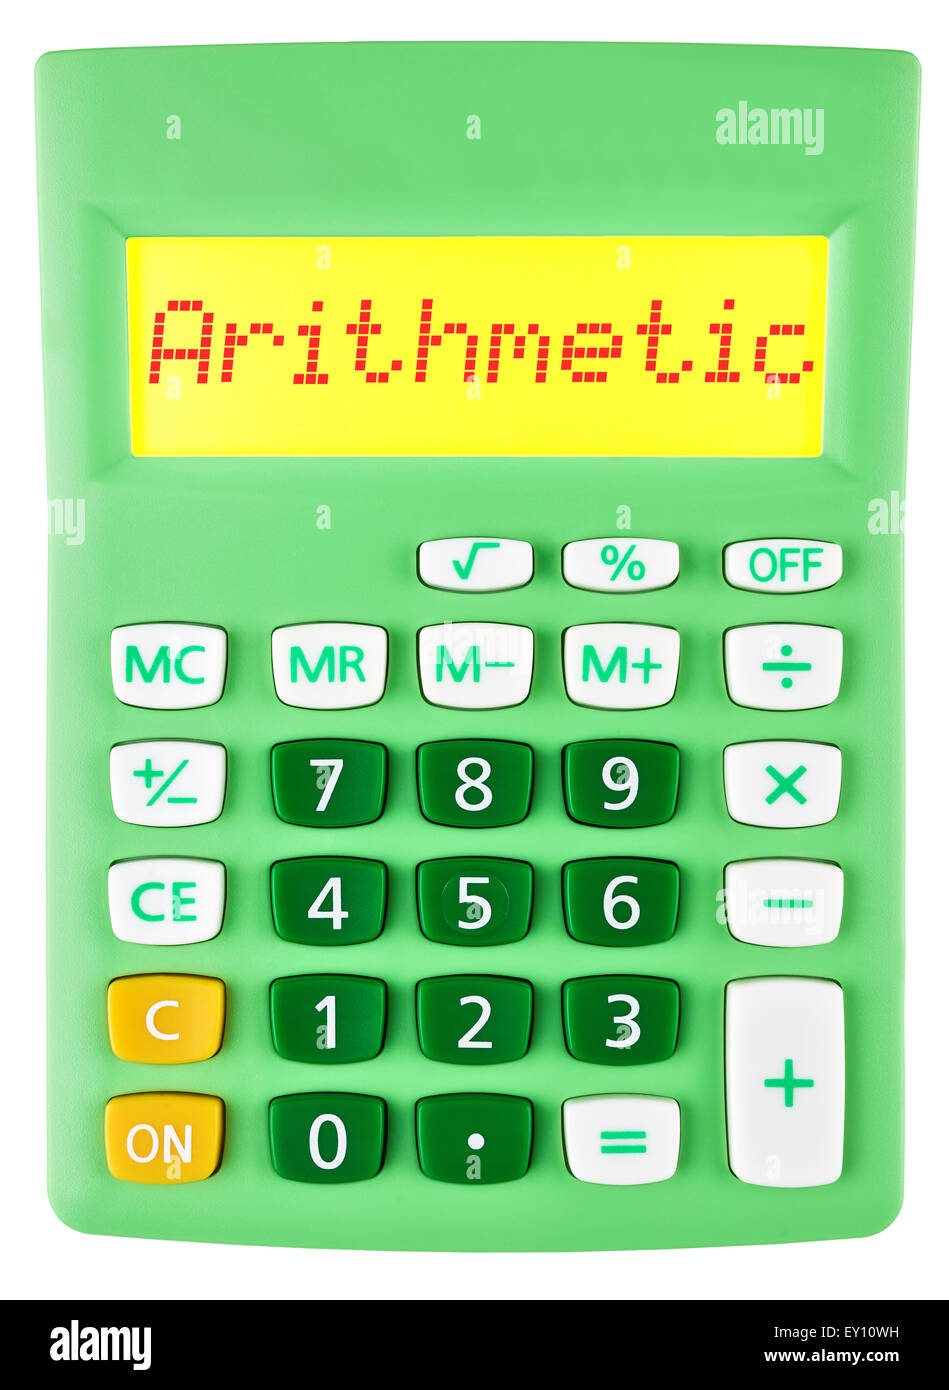 Calculatrice avec affichage sur l'arithmétique Banque D'Images